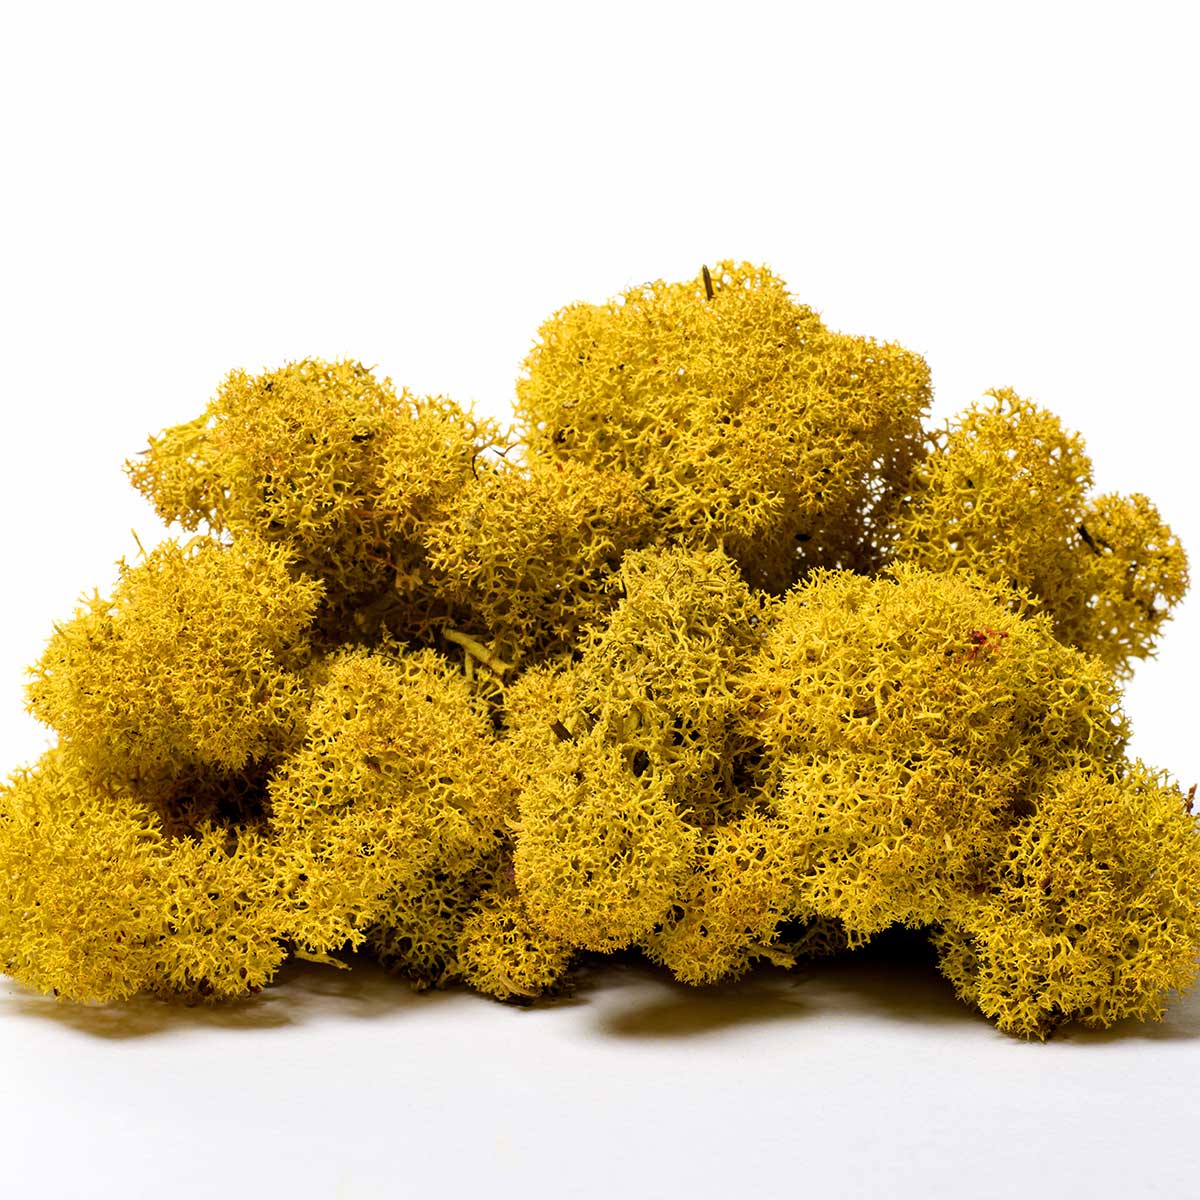 Lir/4060 lichen stabilisée jaune box 4 kg